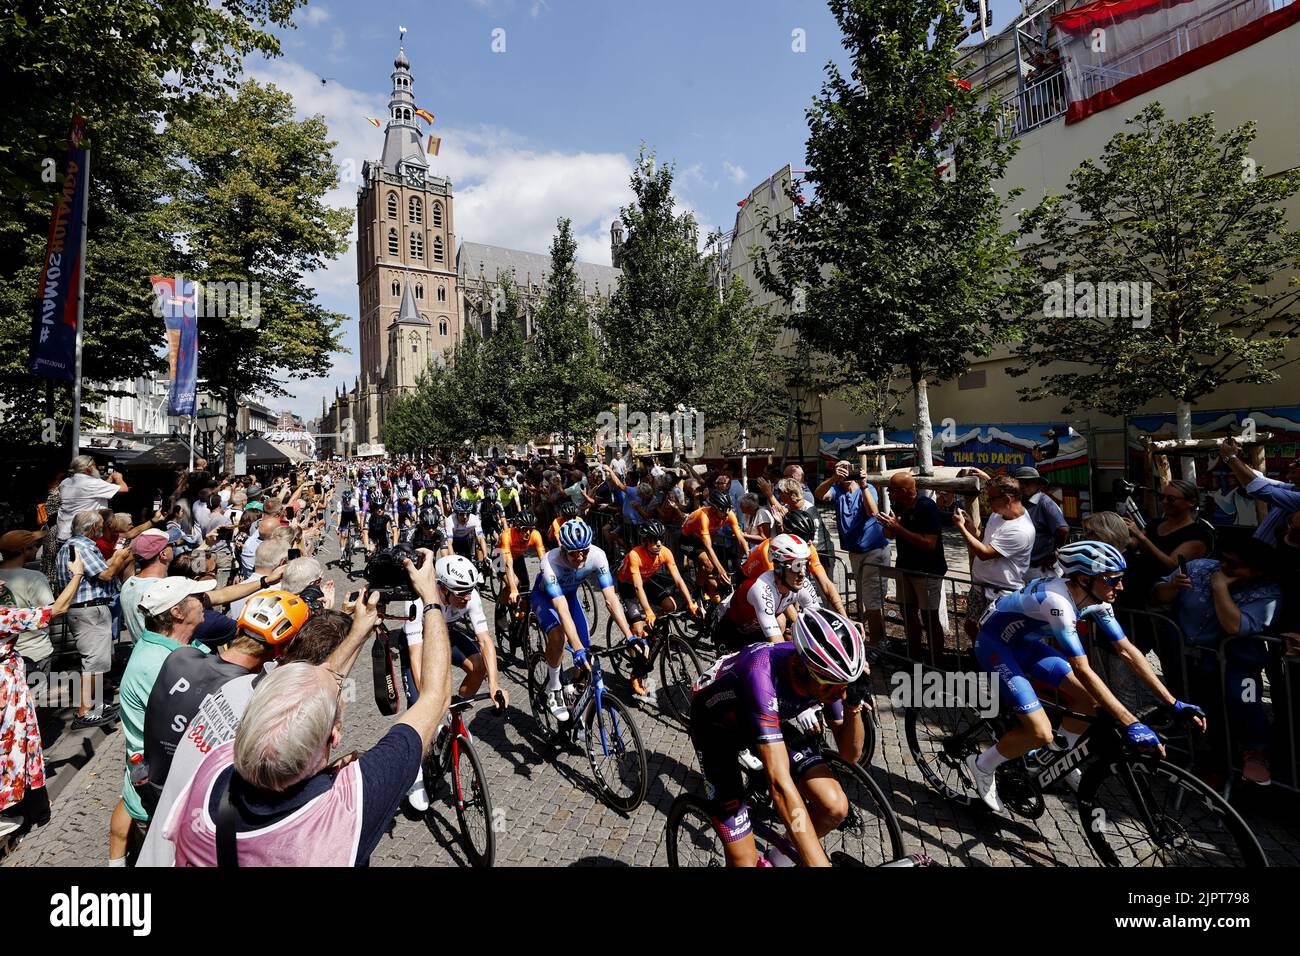 DEN BOSCH - il peloton durante l'inizio della seconda tappa della Vuelta a Espana (Vuelta a Espana). La seconda tappa della Vuelta va da Den Bosch a Utrecht. Foto Stock